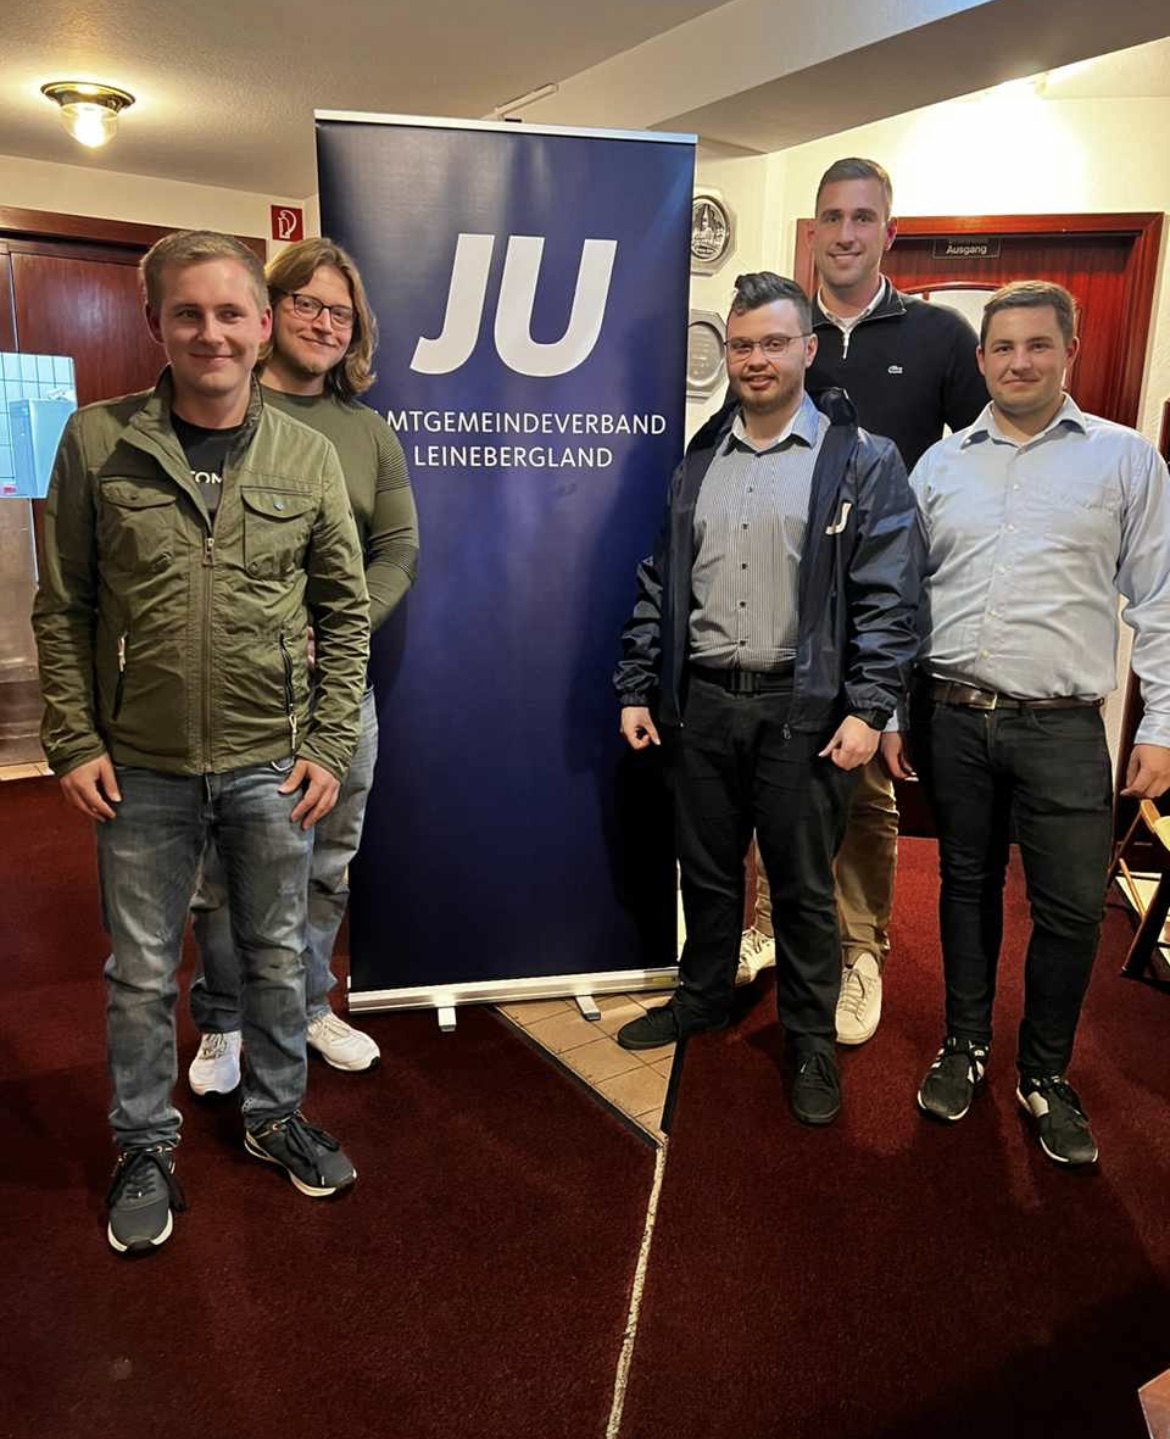 Der neue Vorstand der JU-Leinebergland um den wiedergewählten 1. Vorsitzenden Alexander Herfort (3. von rechts), zusammen mit dem aktuellen Kreisvorsitzenden Max Dettmar - als Stellvertreter (2. von rechts).